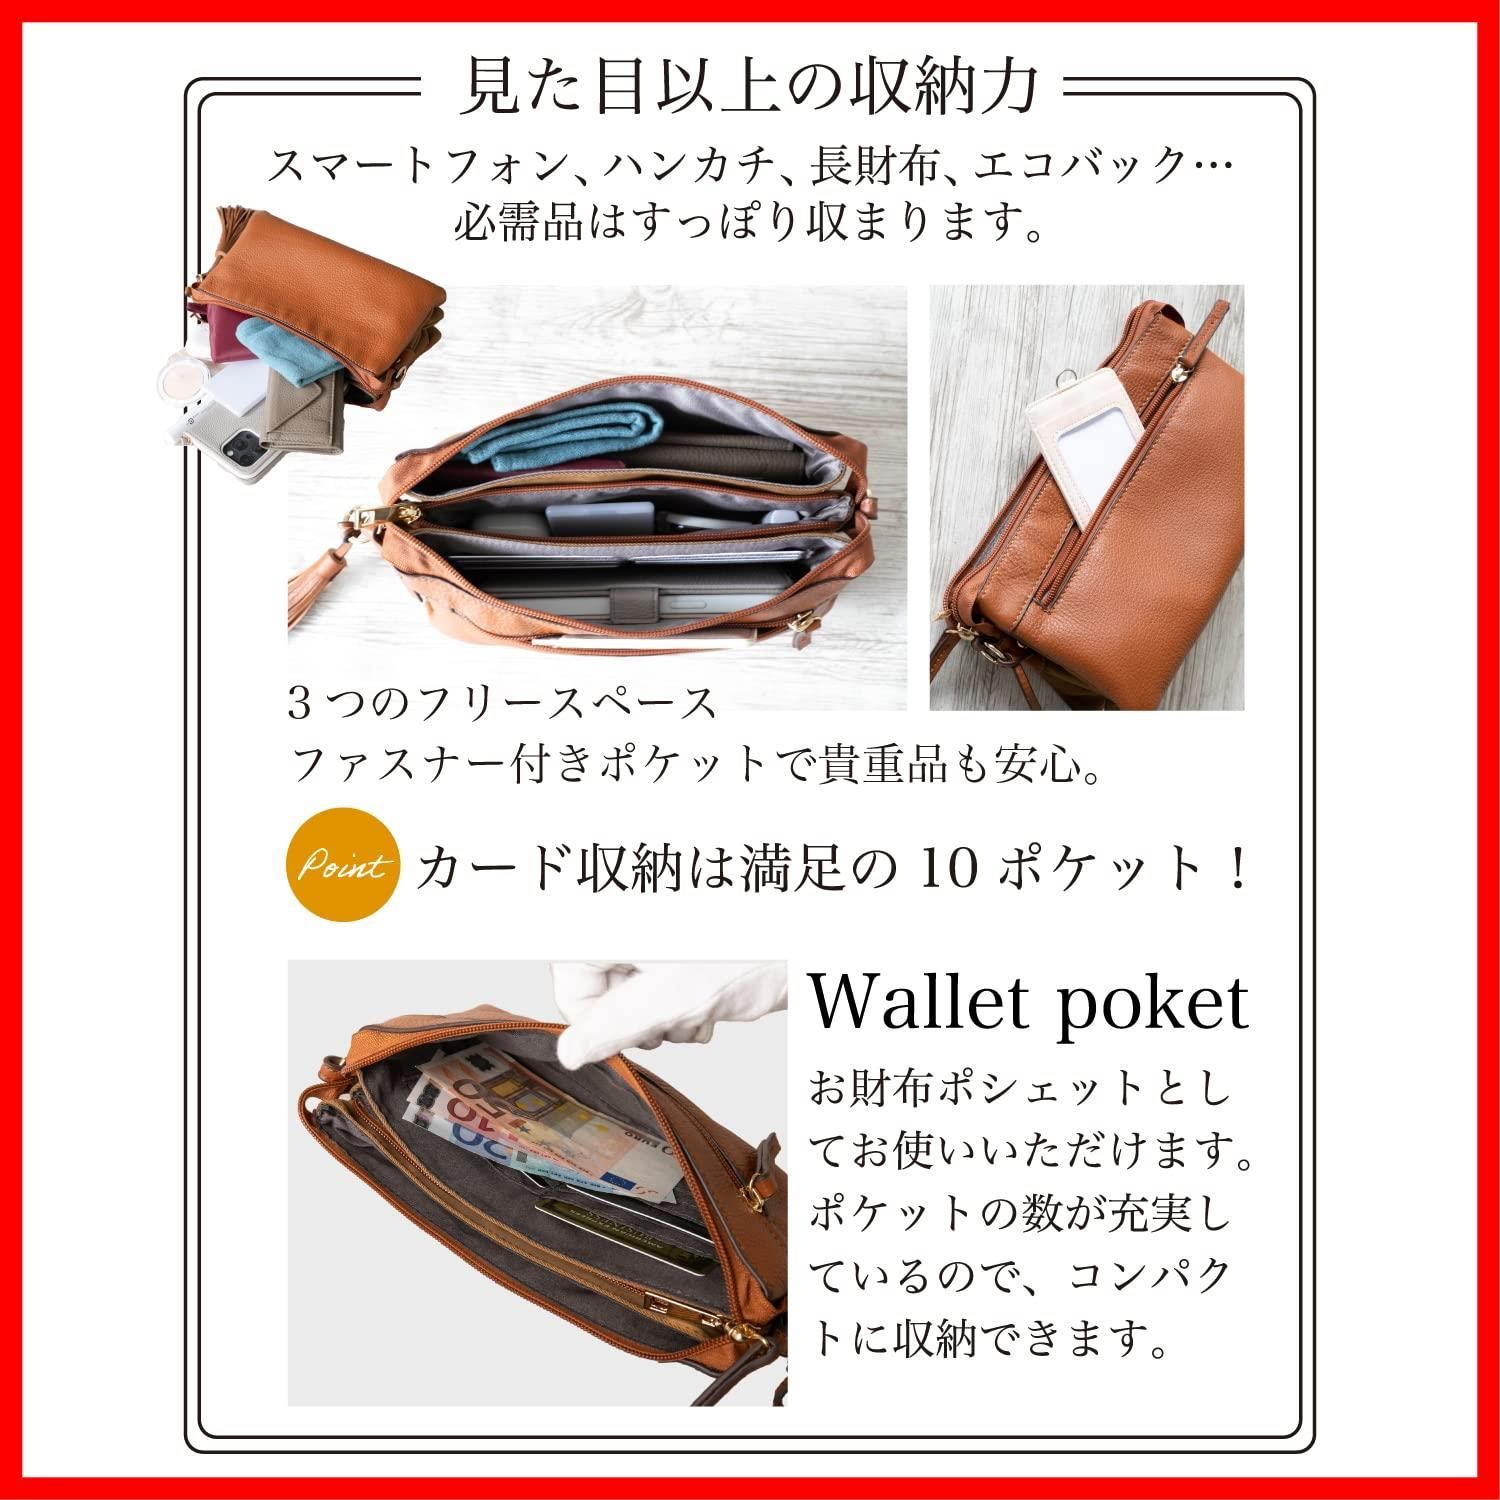 【色: ブラウン】イマイバッグ QUAY お財布 ショルダー お財布ポシェット